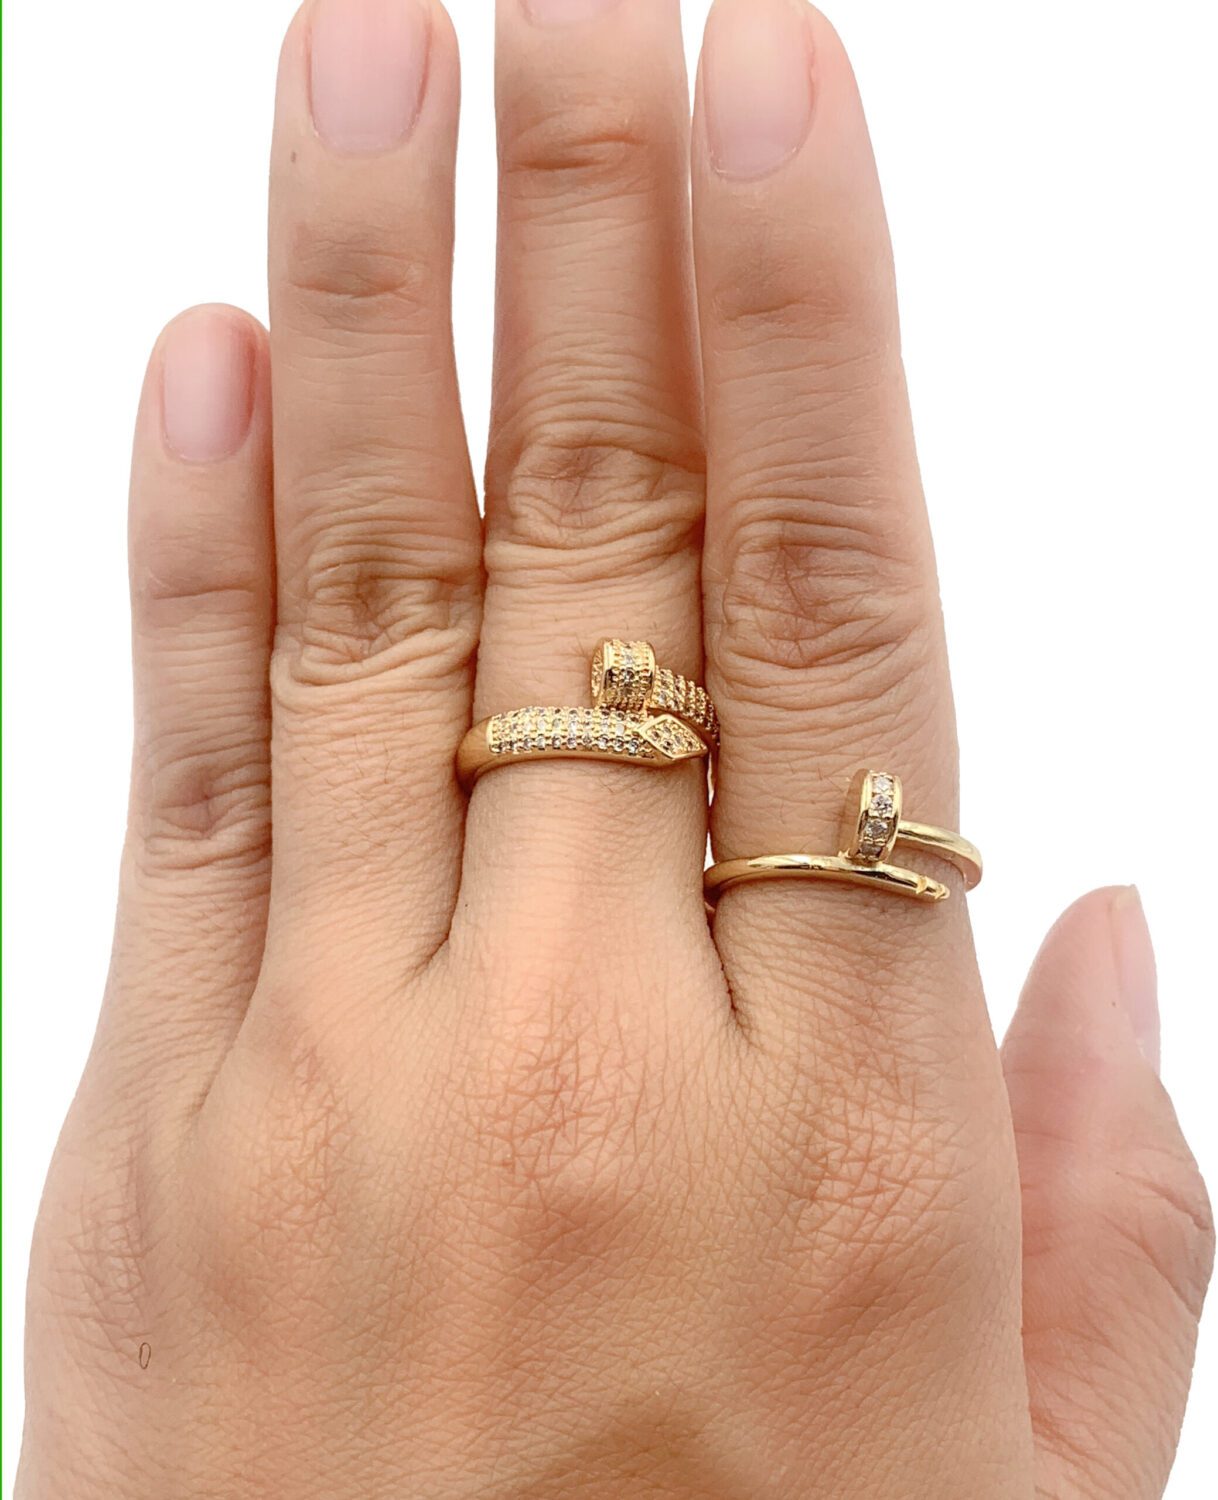 Paralleled Artistry Gold Nailpolish Ring